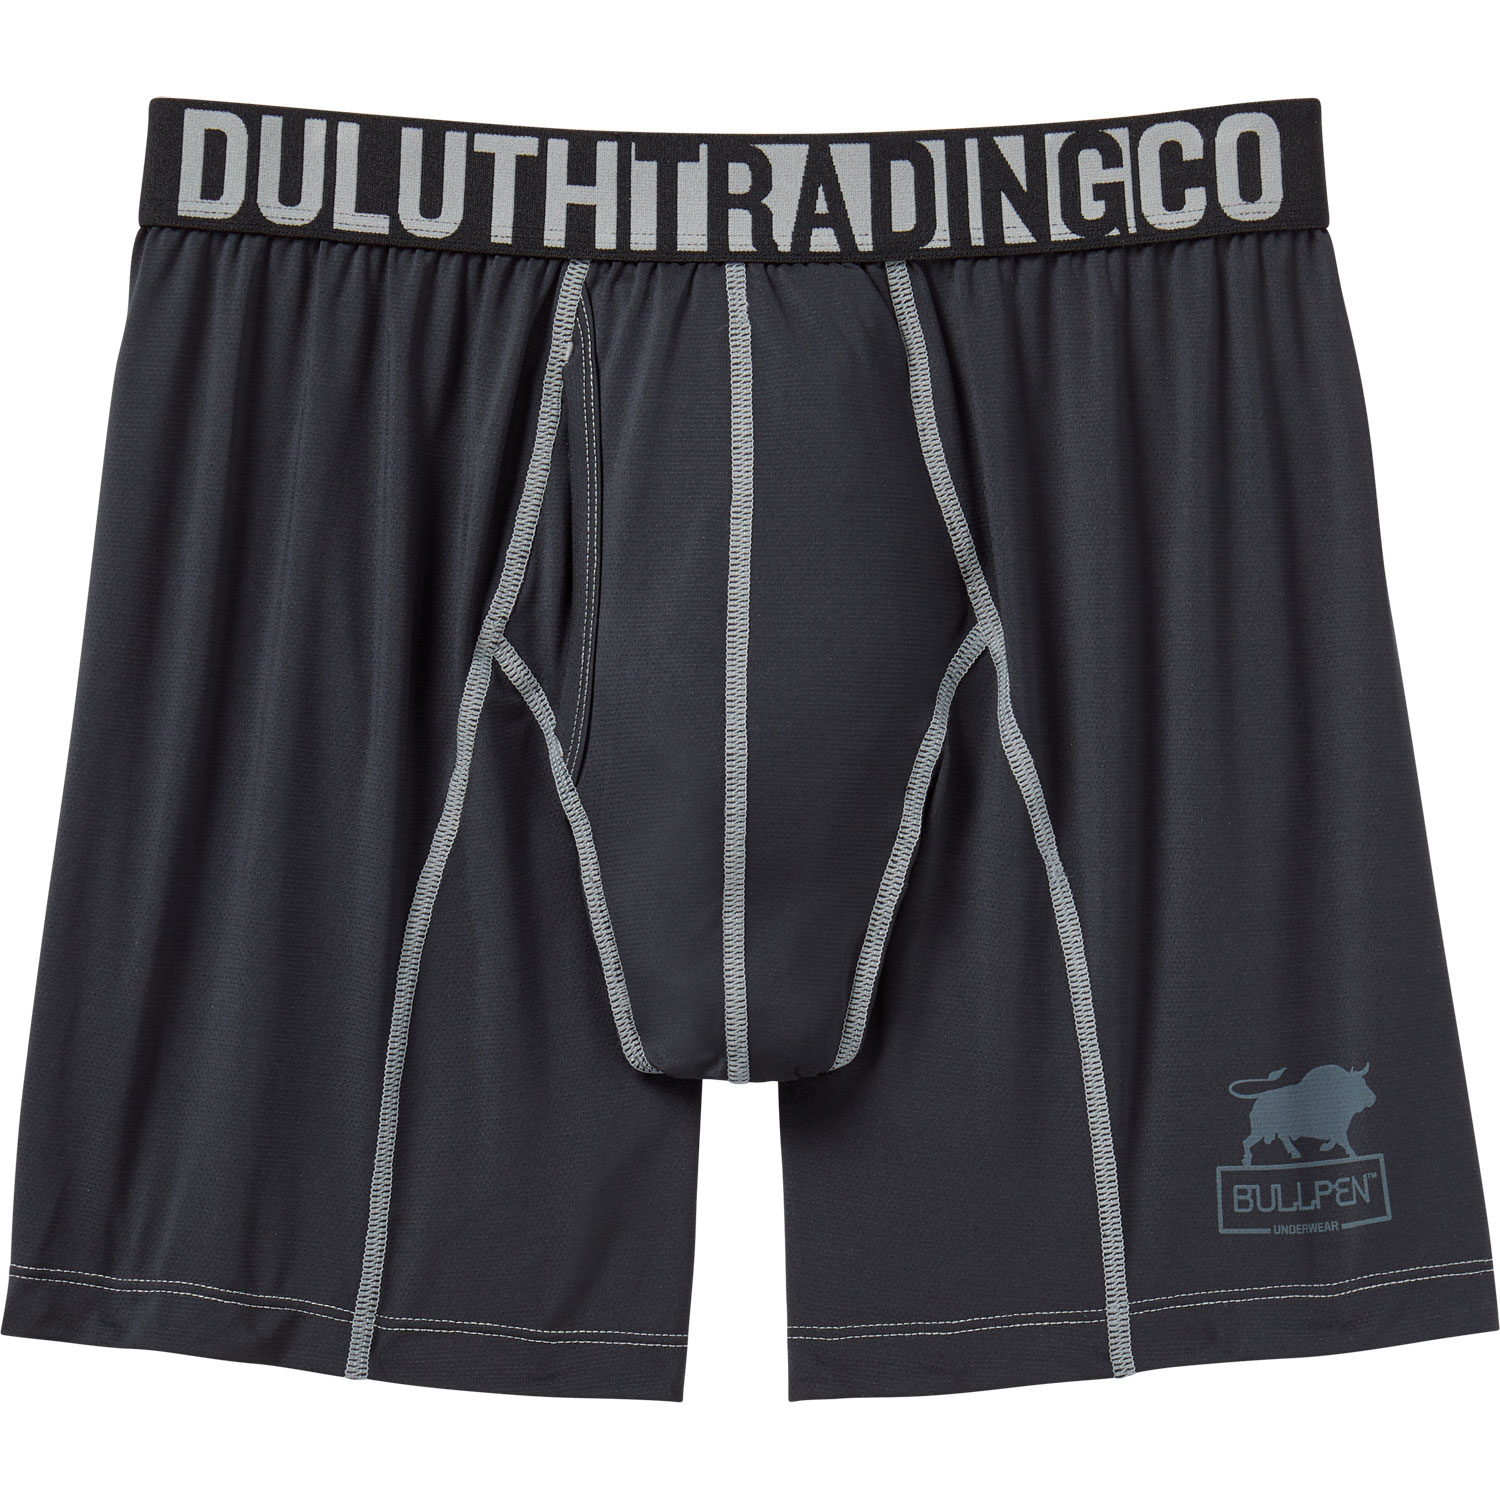 Underwear Challenge review. Duluth bullpen boxer briefs real